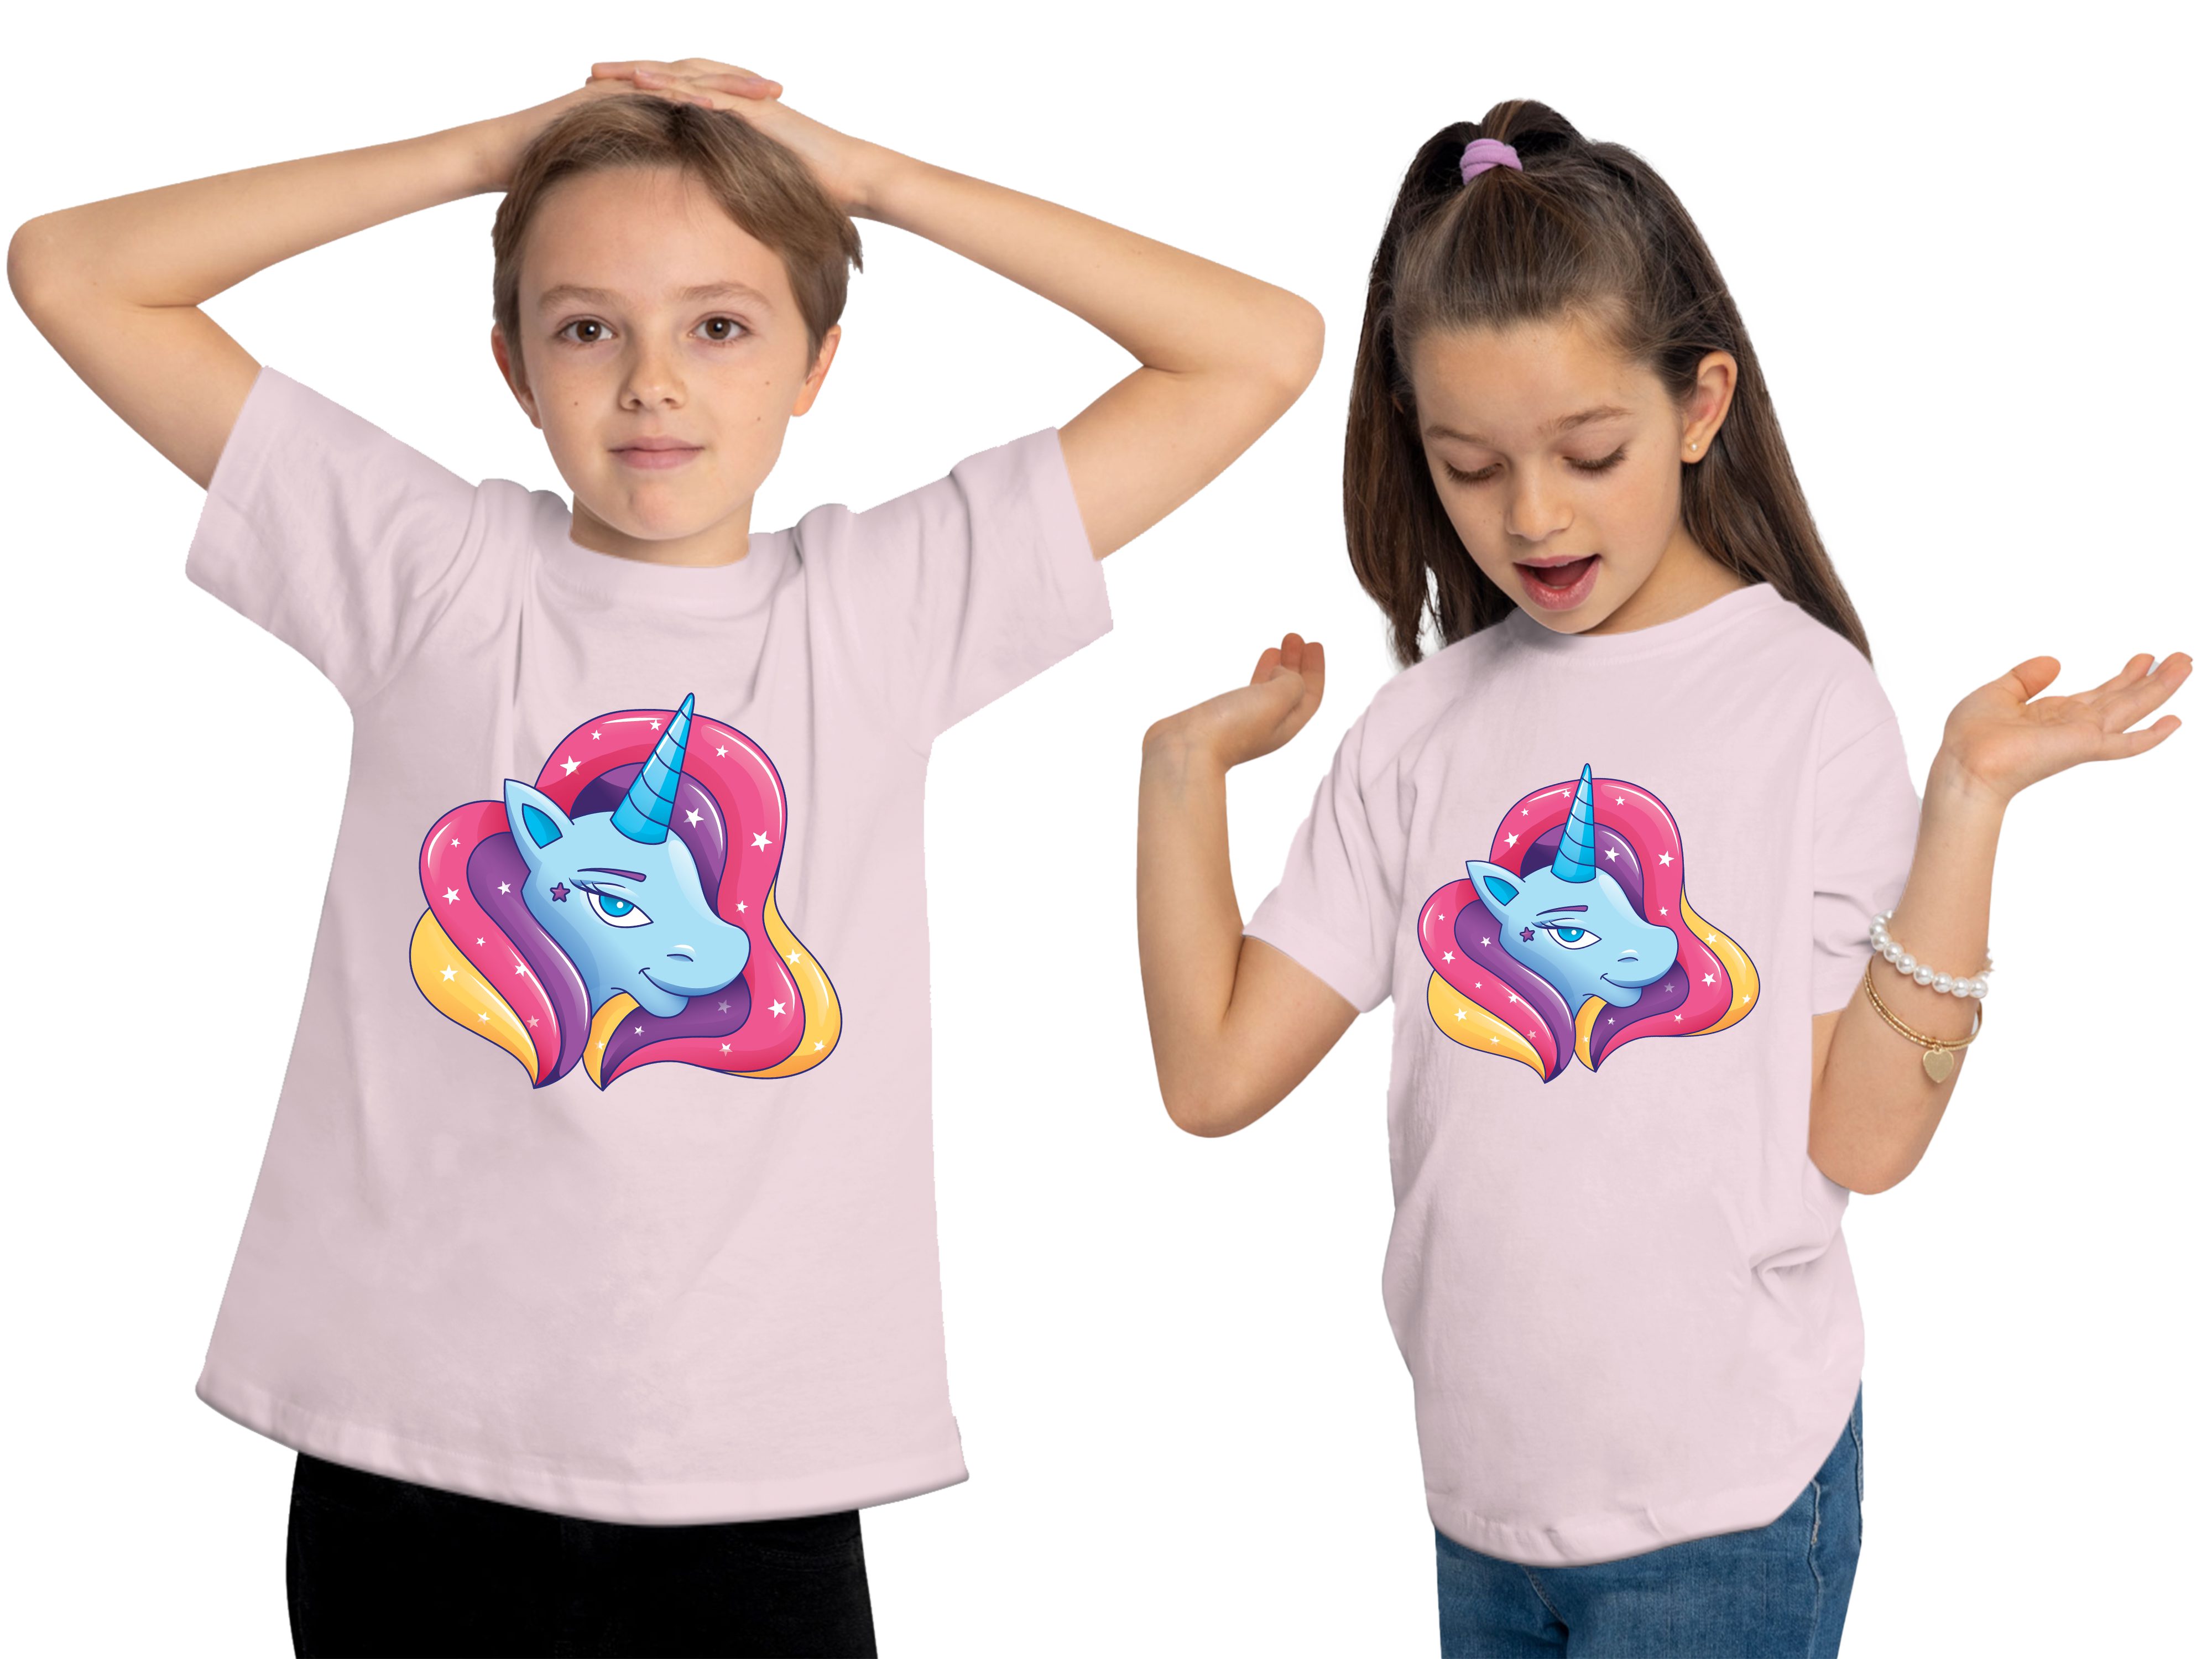 i195 MyDesign24 Baumwollshirt T-Shirt - mit Kopf Mädchen Print-Shirt mit rosa Kinder Einhorn Aufdruck, Regenbogenmähne bedrucktes